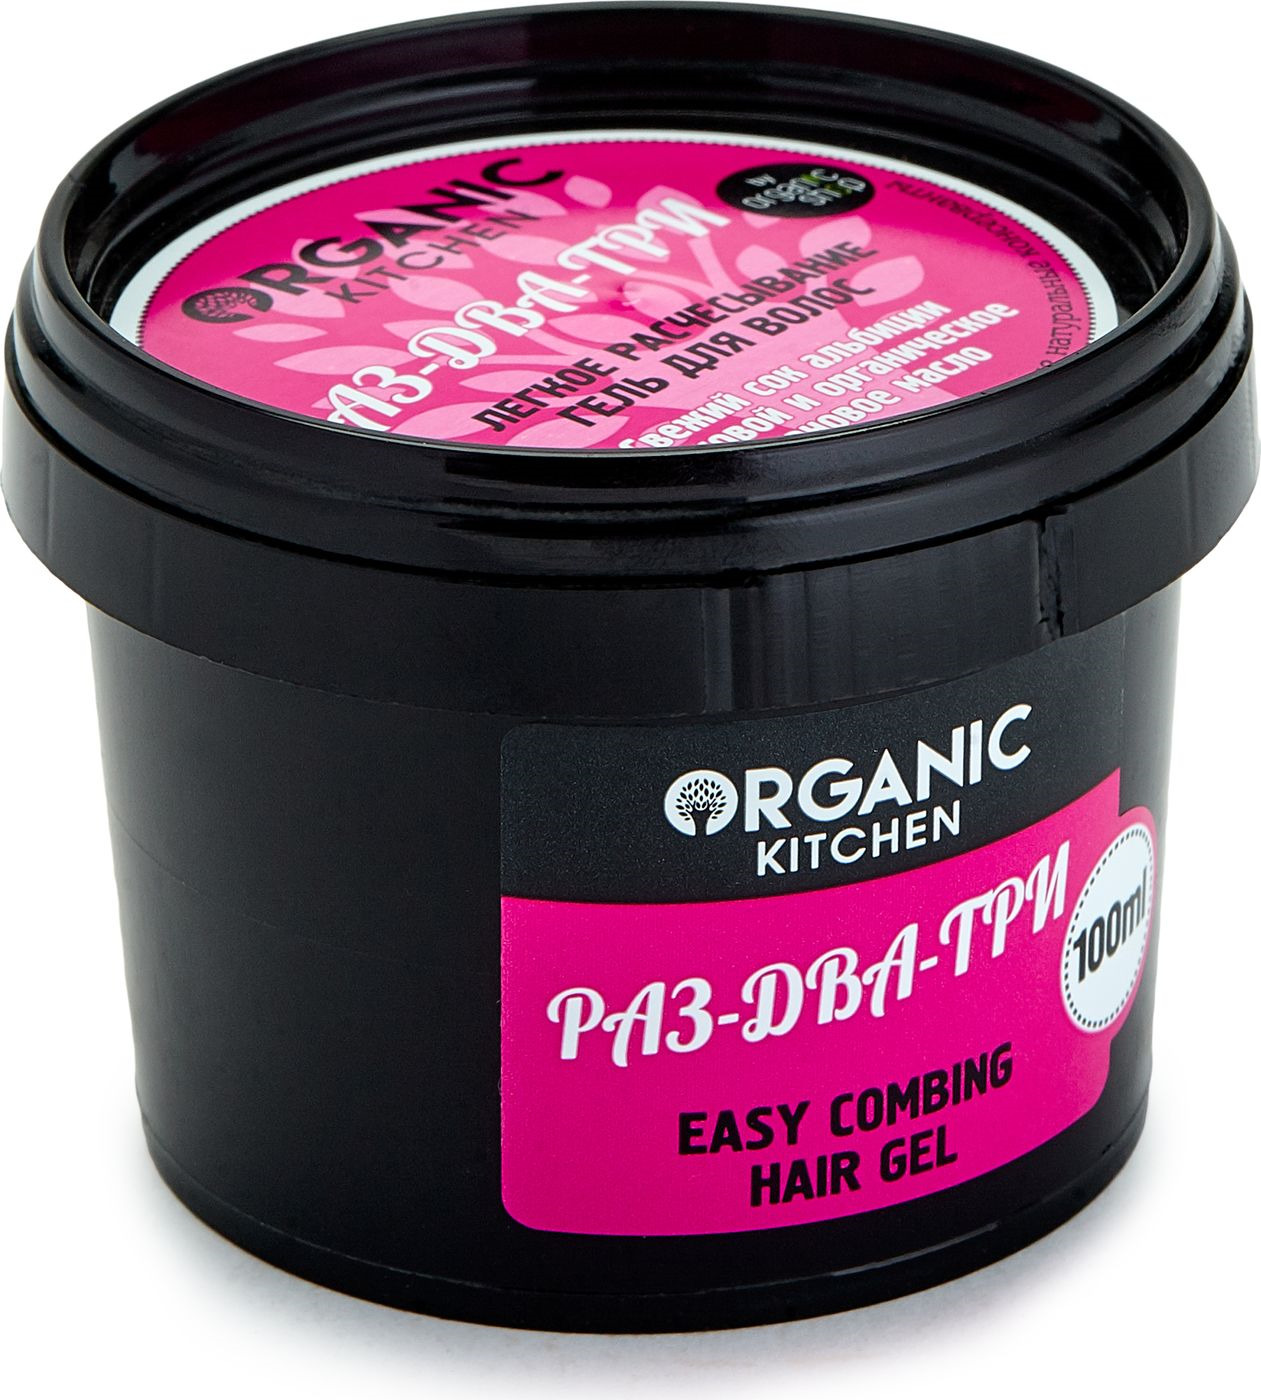 фото Органик Шоп Китчен Гель для волос легкое расчесывание "Раз-два-три" 100мл Organic shop